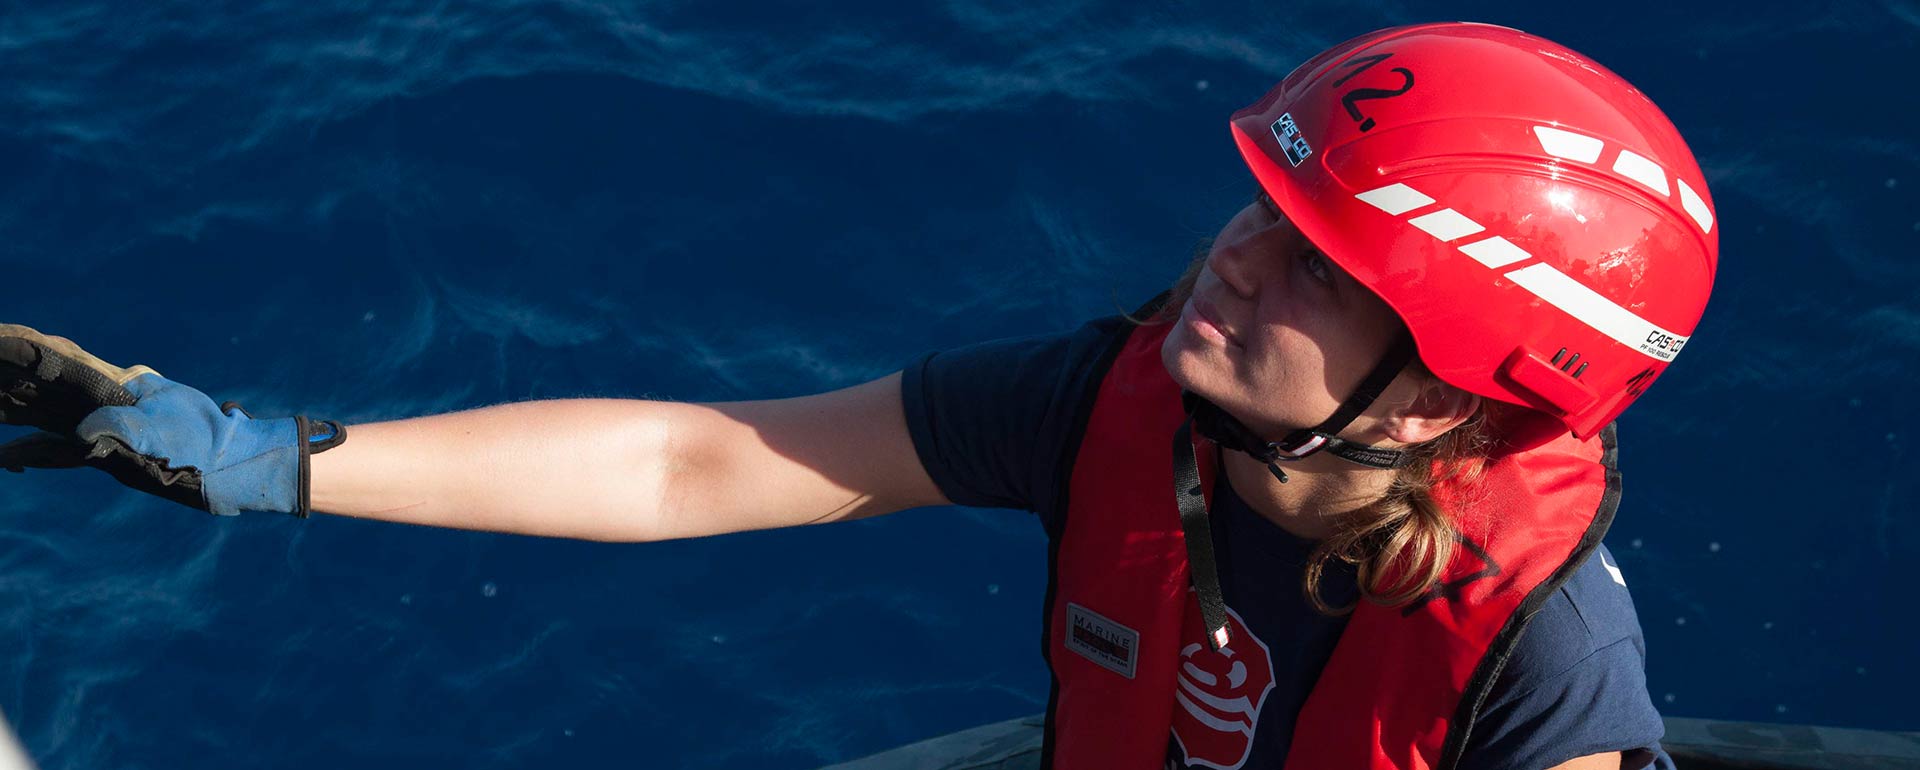 Lifeline-Crewmitglied auf Boot in Nahaufnahme, im Hintergrund das Meer, hat Helm und Handschuhe an und schaut nach oben